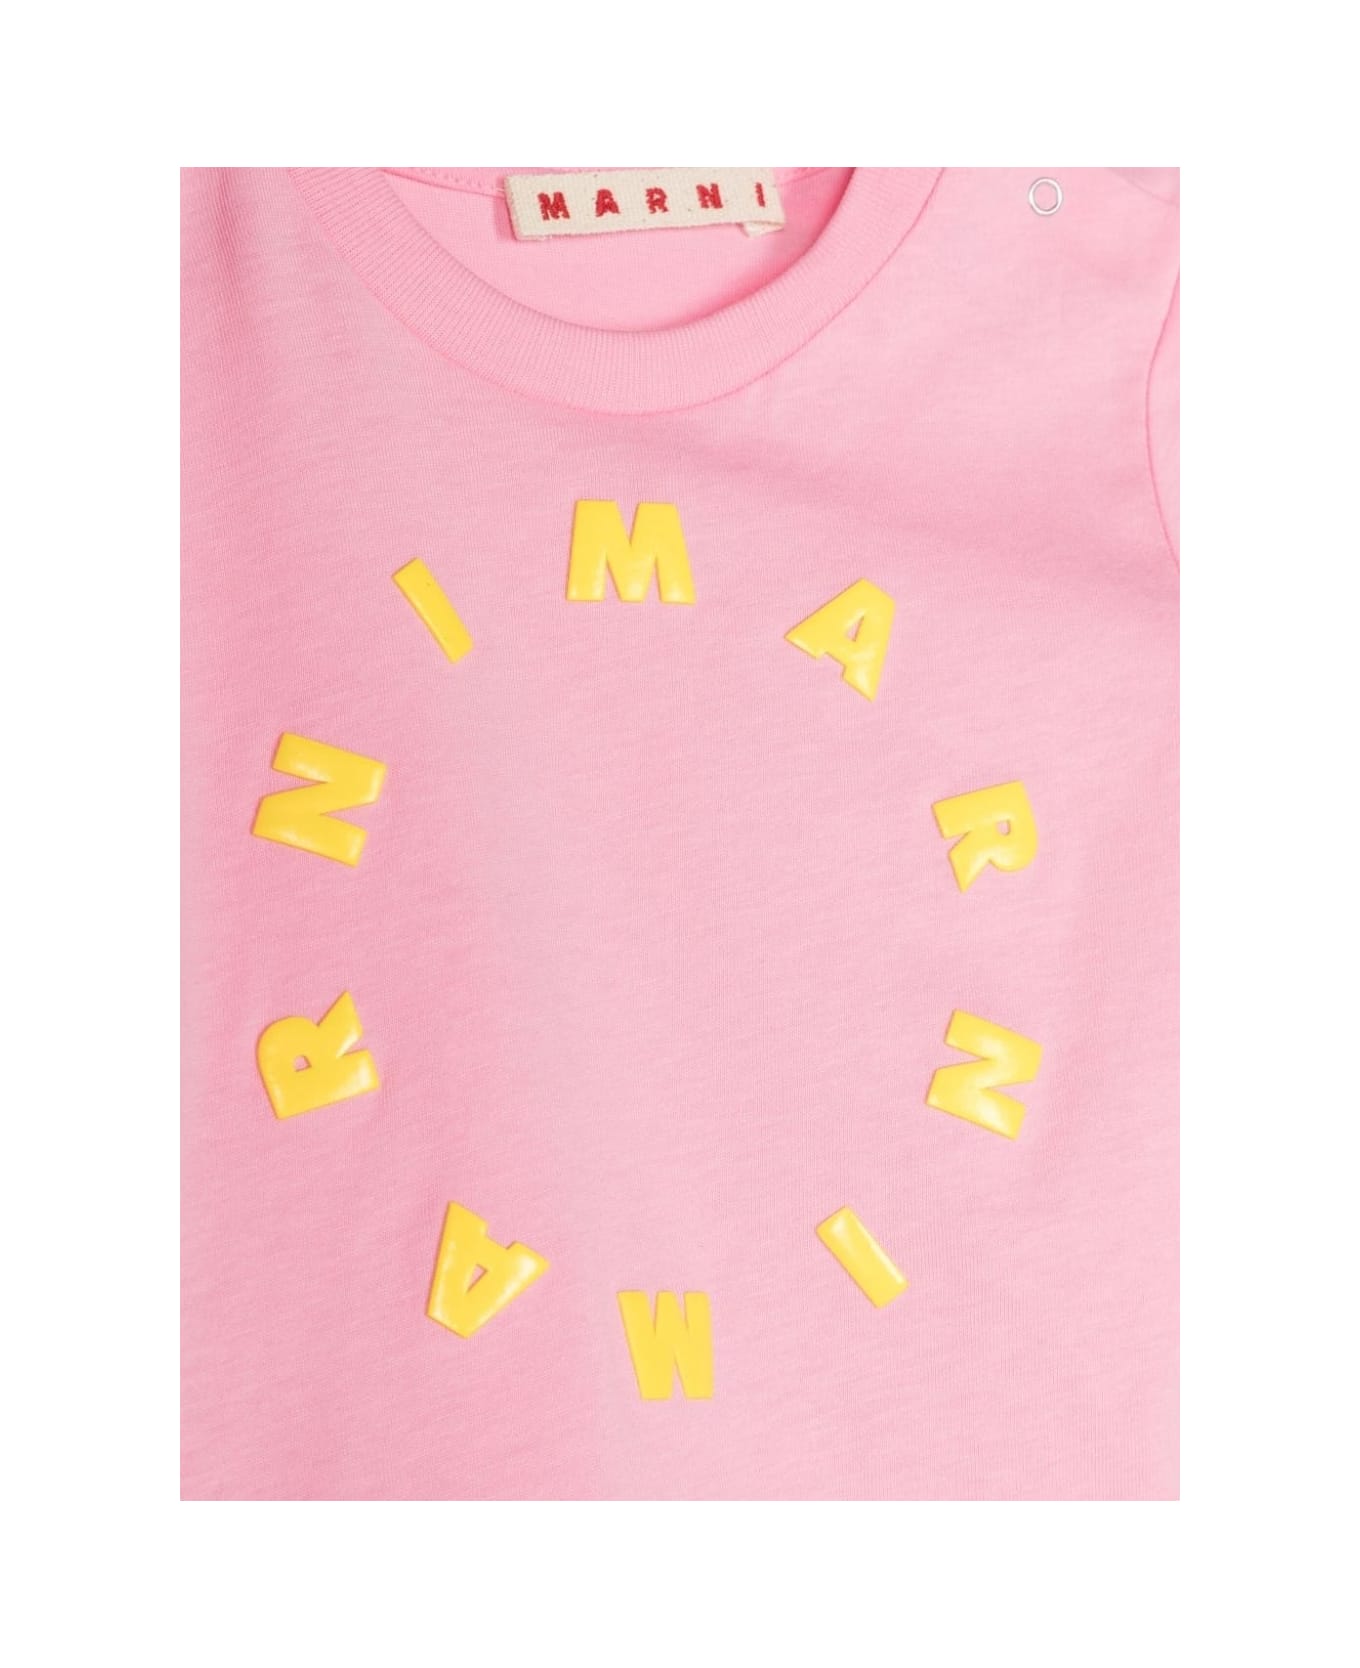 Marni T-shirt Con Logo - Pink